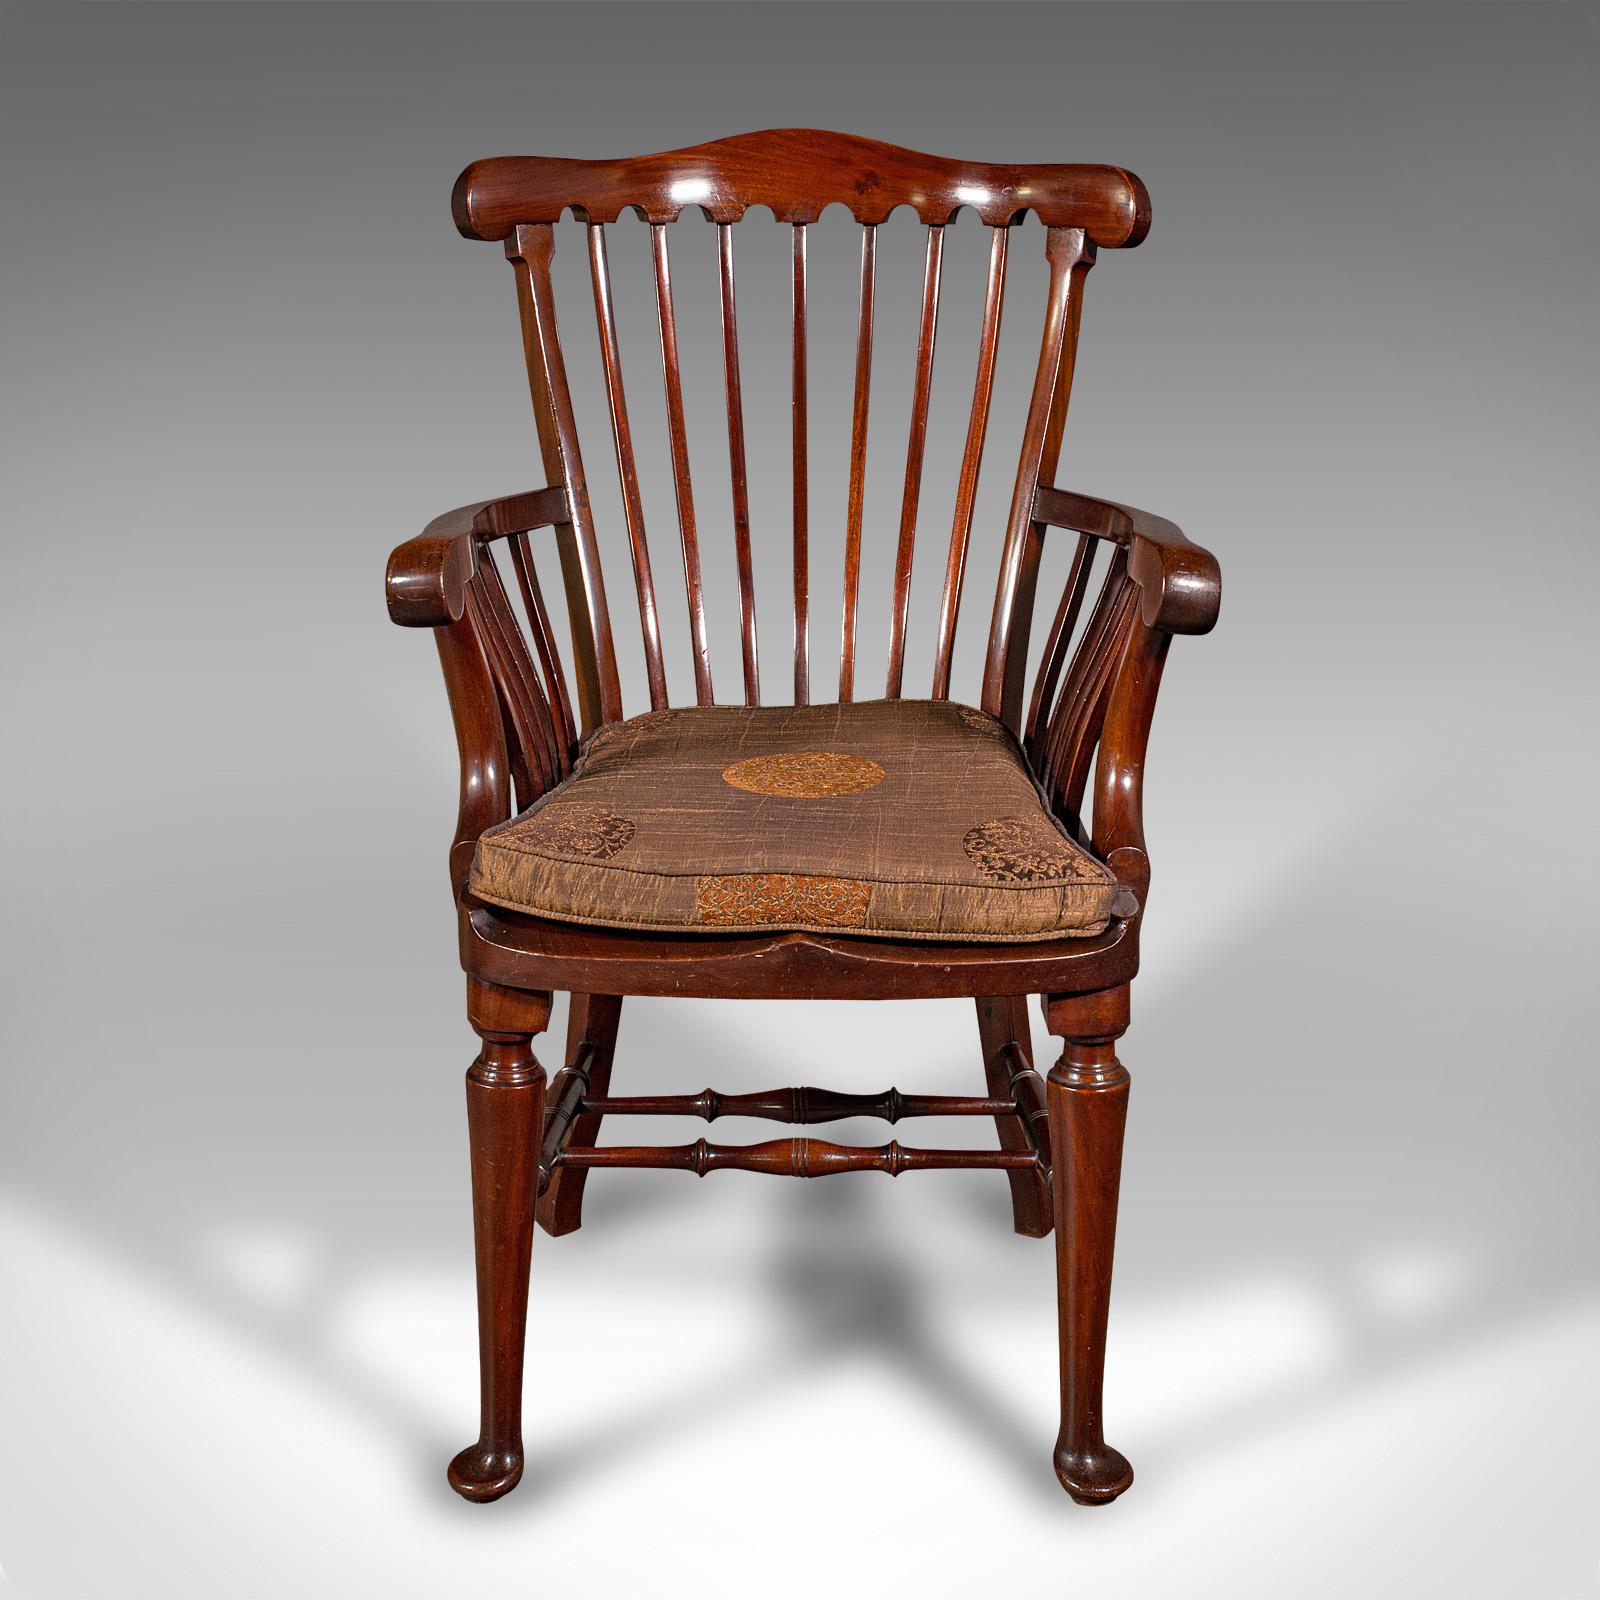 Il s'agit d'un ancien fauteuil d'ecclésiastique. Un fauteuil anglais en acajou et en hêtre, de style néo-géorgien, datant de la fin de la période victorienne, vers 1890.

Fauteuil de facture élégante avec une finition et une couleur